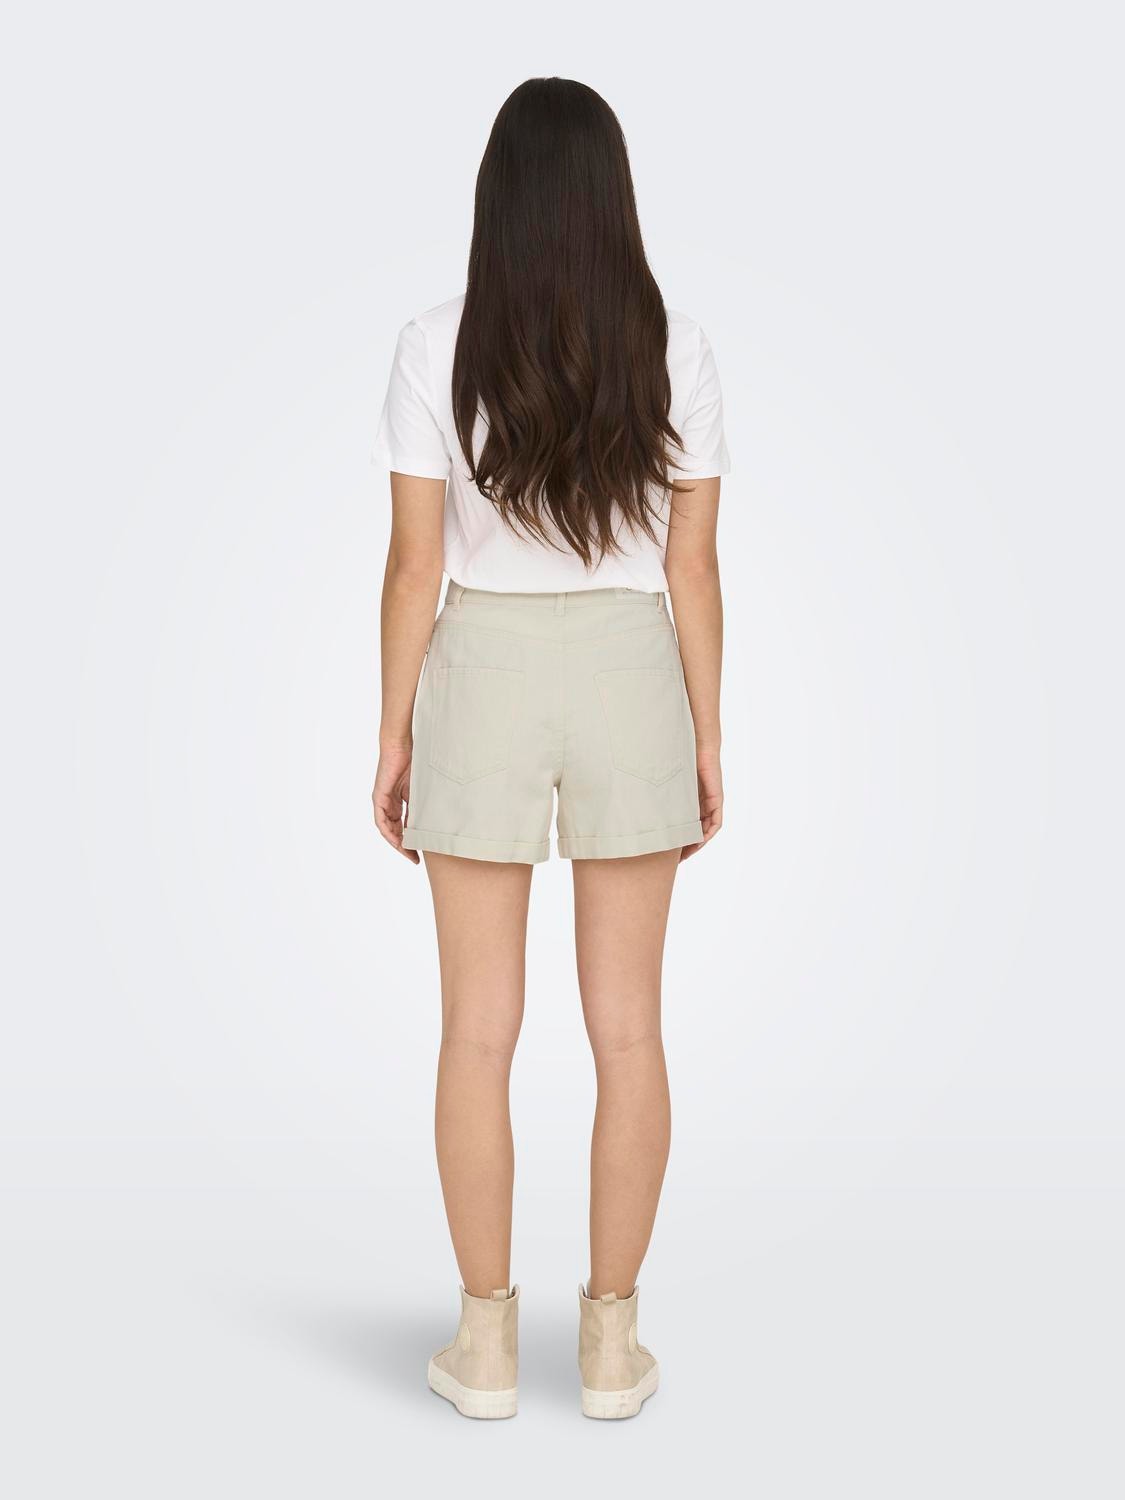 ONLY Shorts Regular Fit Taille haute Ourlets repliés -Ecru - 15230571